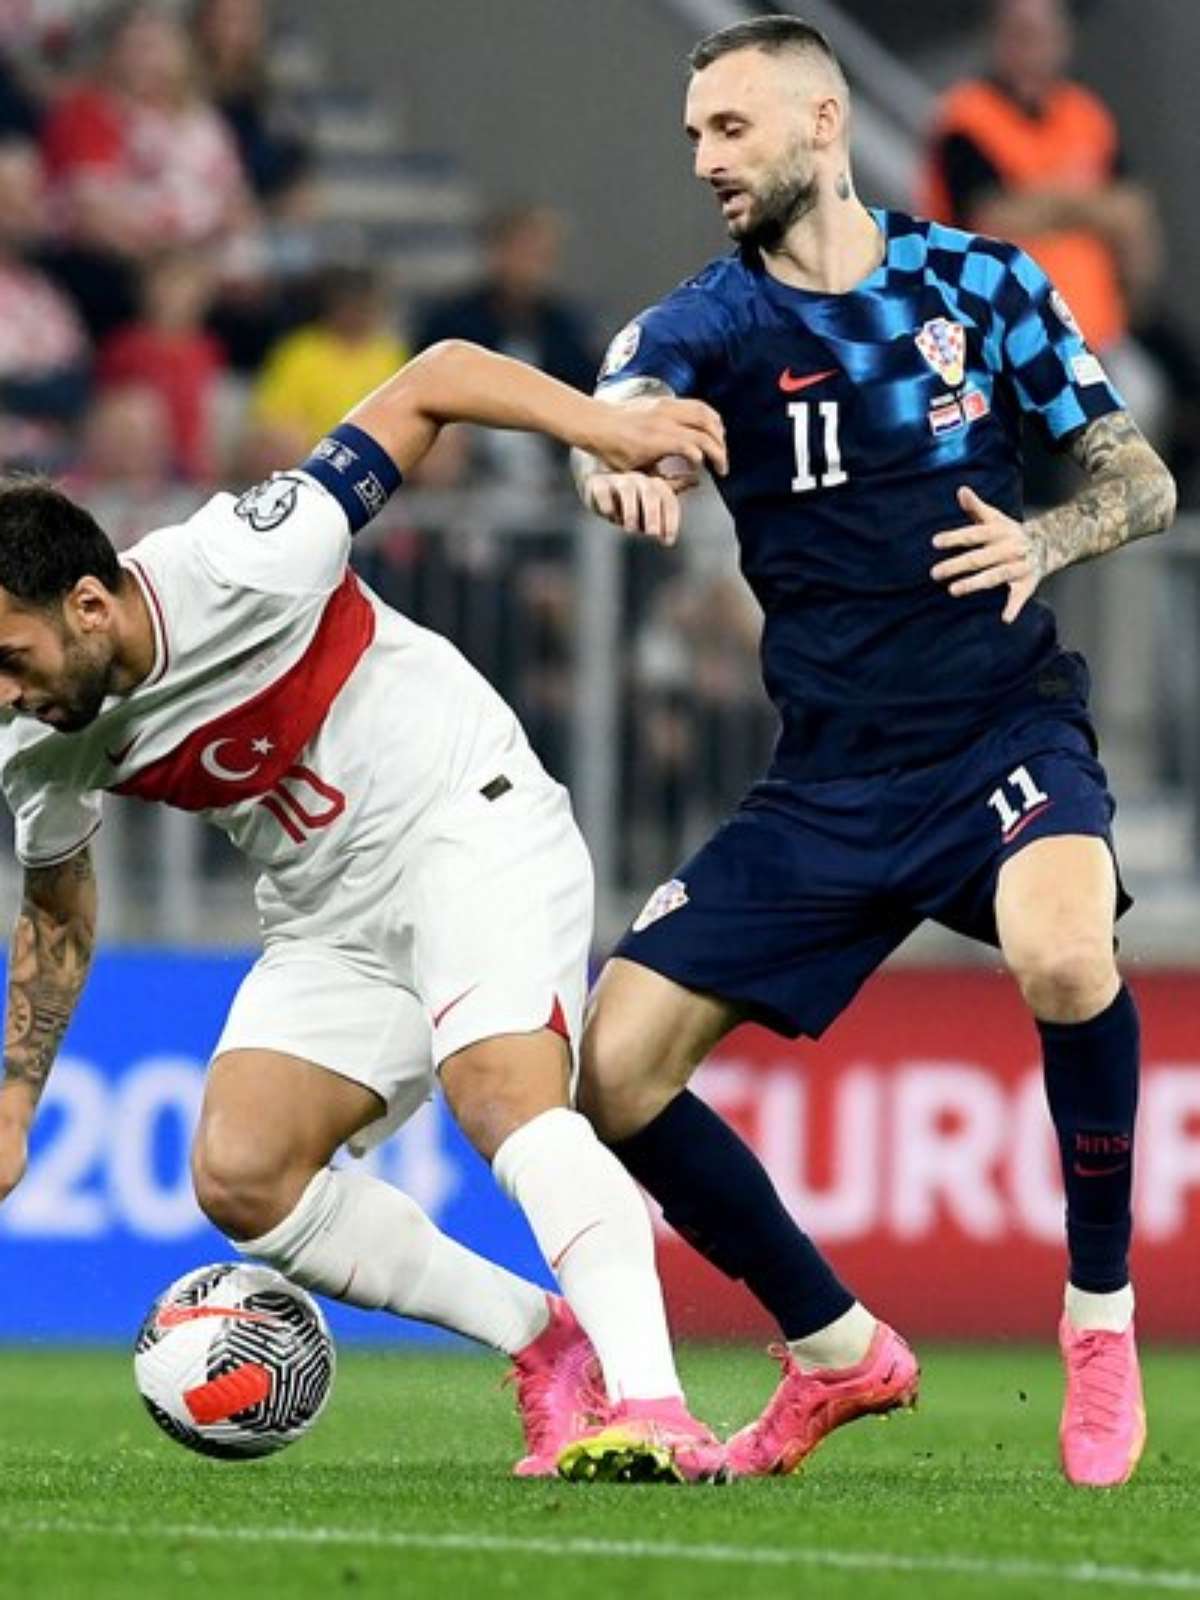 Turquia empata (1-1) com a Croácia no caminho para a Copa do Mundo de 2018